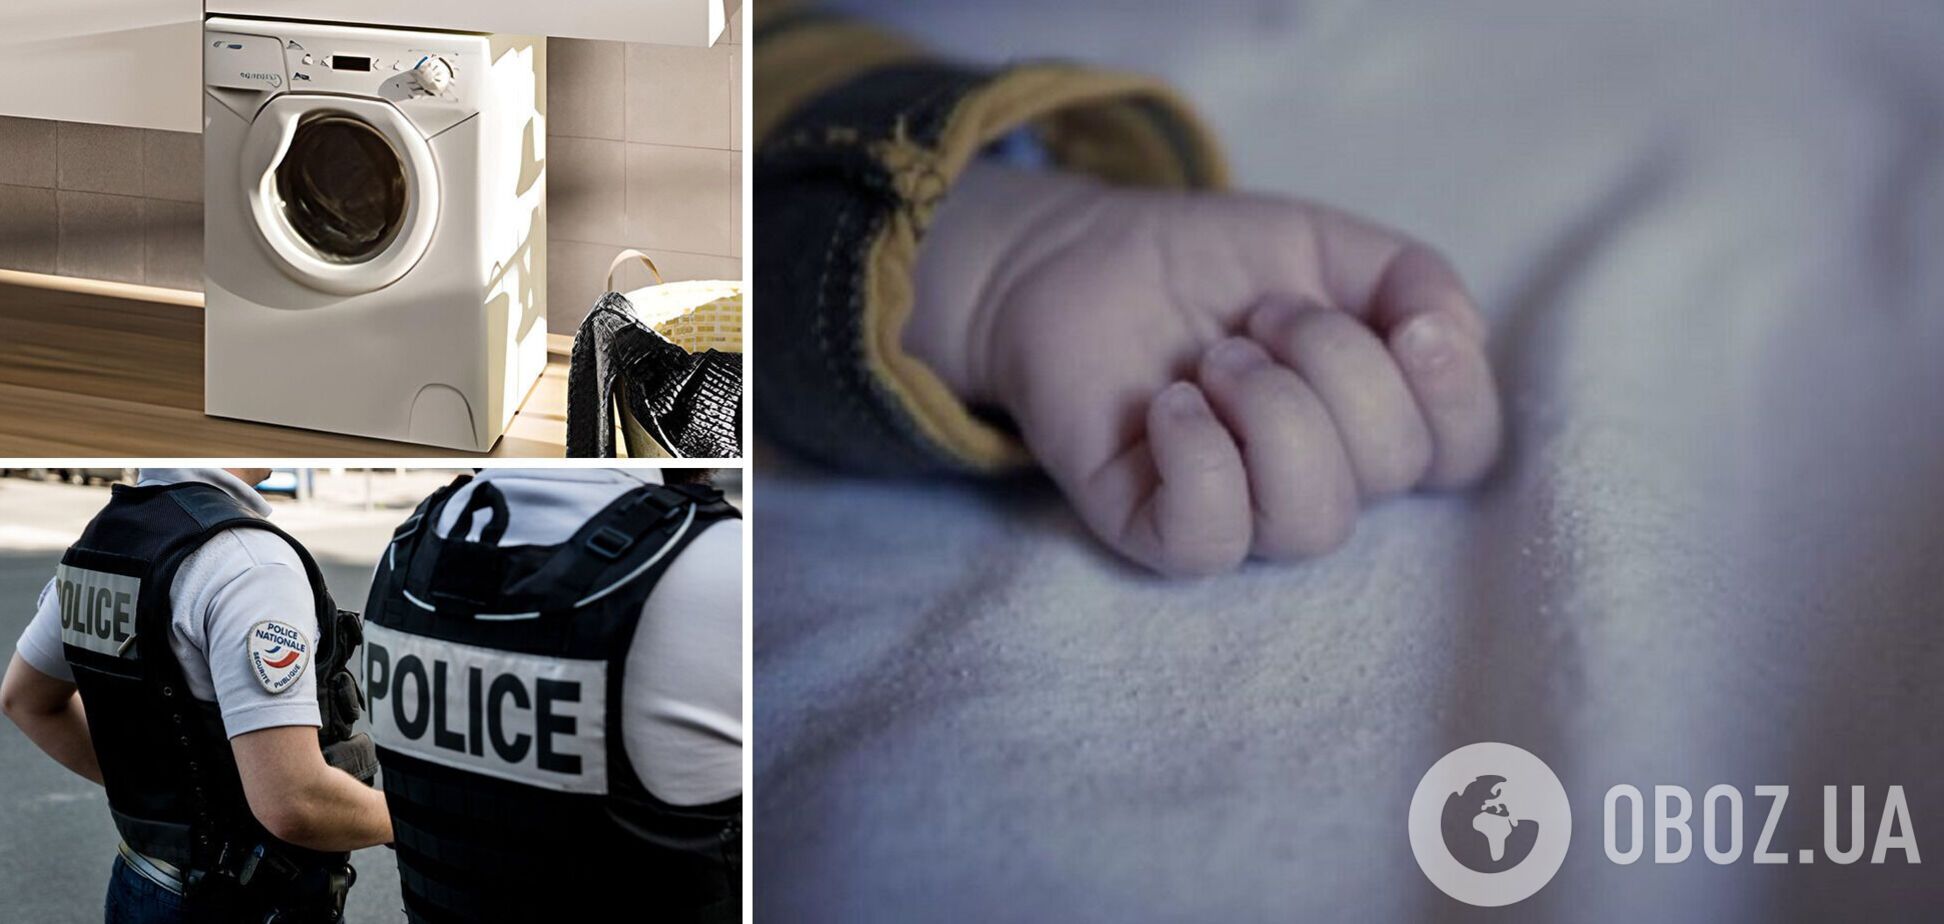 Во Франции 3-летний ребенок умер в стиральной машине, пока семья ужинала